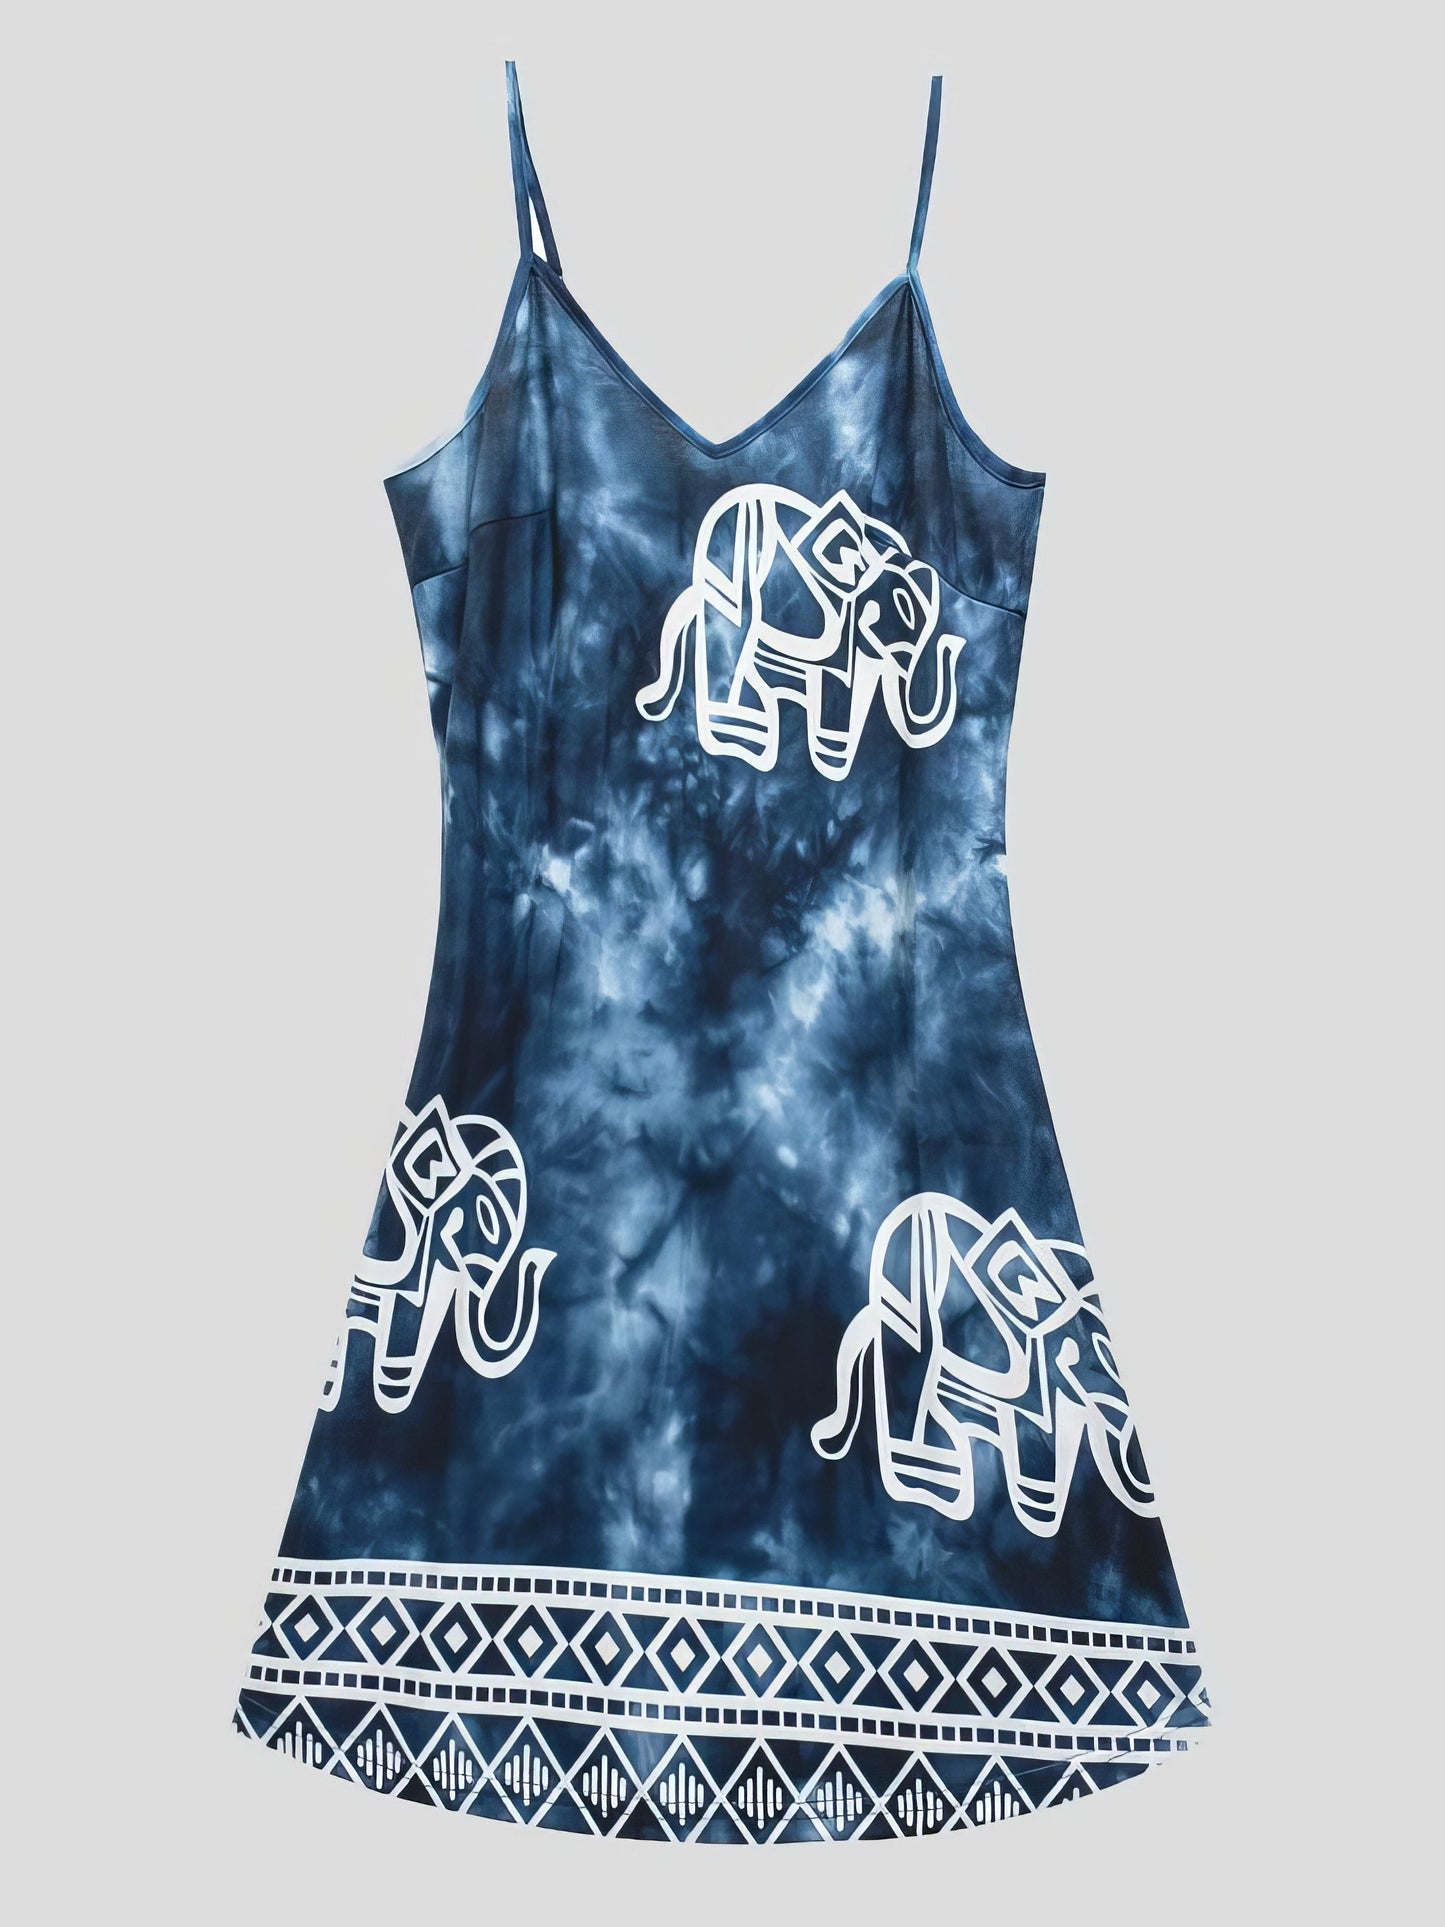 Mini Dresses - Tie-dye Elephant Print Sleeveless Skirt - MsDressly